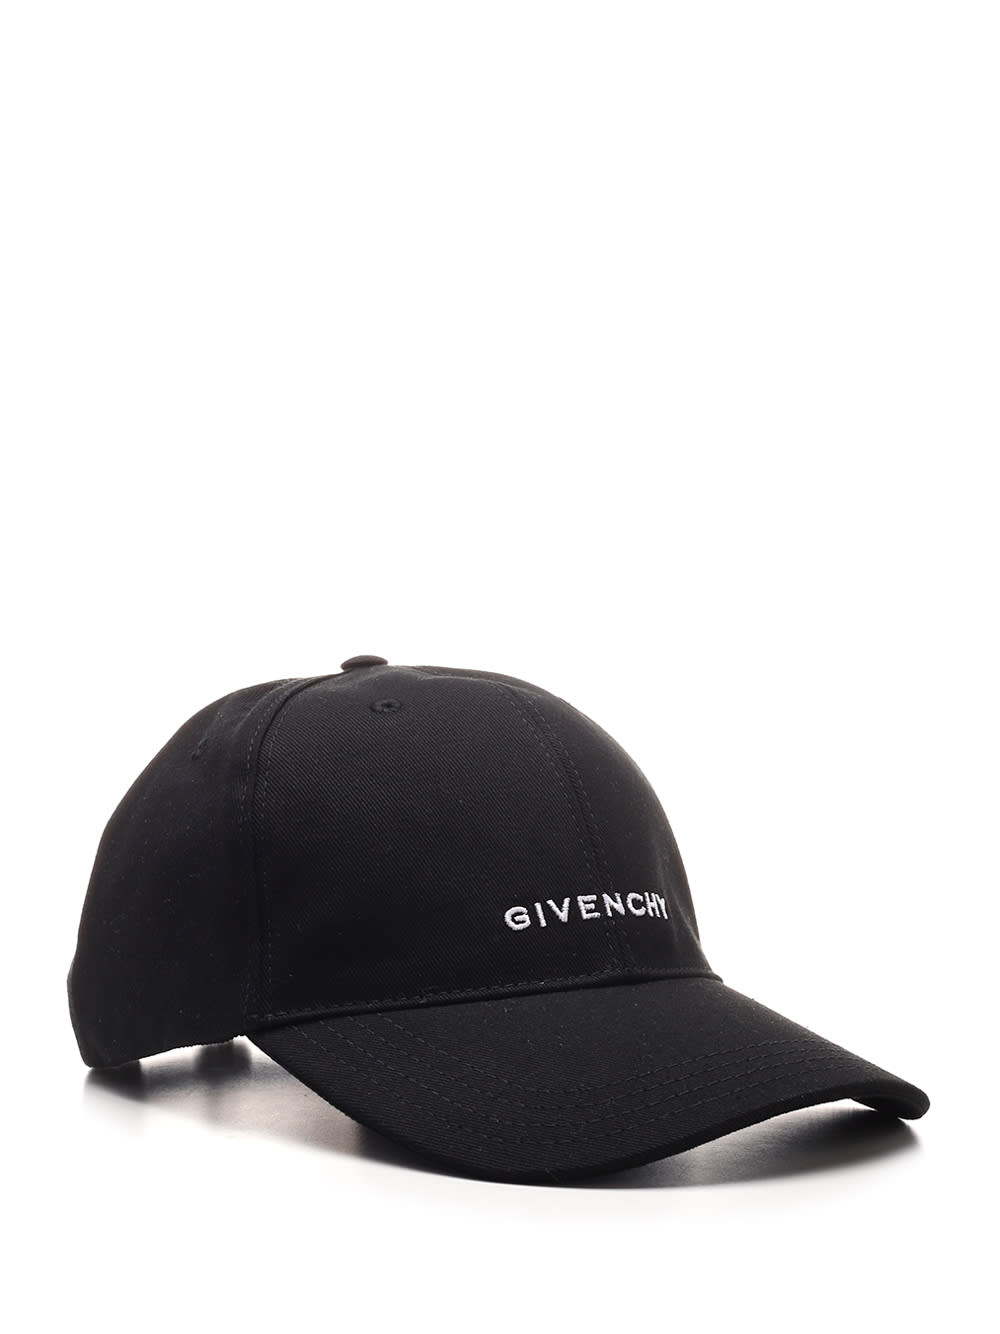 Shop Givenchy Black 4g Baseball Cap